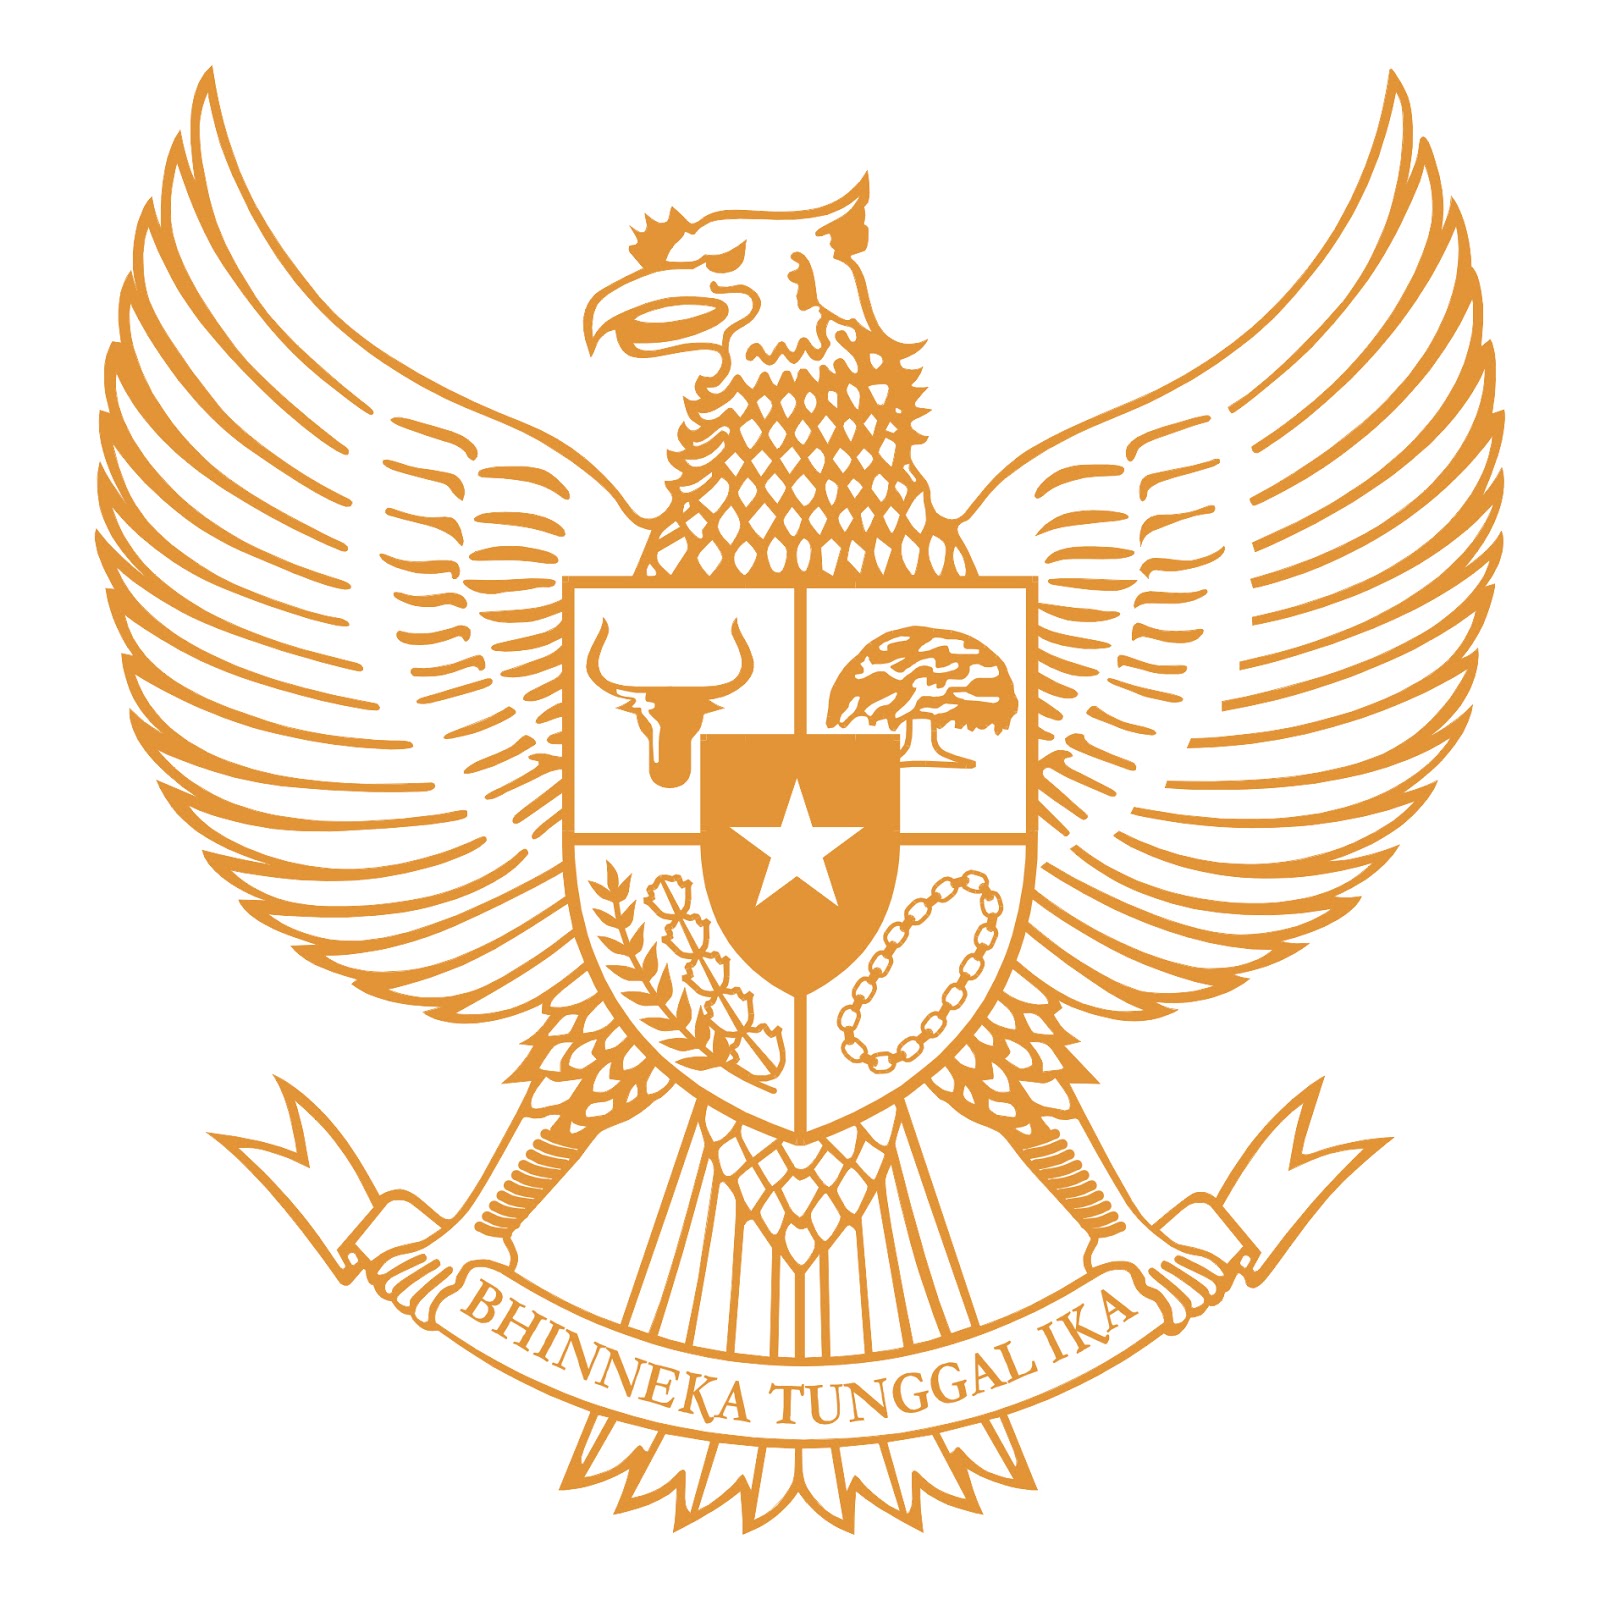 Download Logo Garuda  Pancasila  Vector CDR GUDANG LOGO